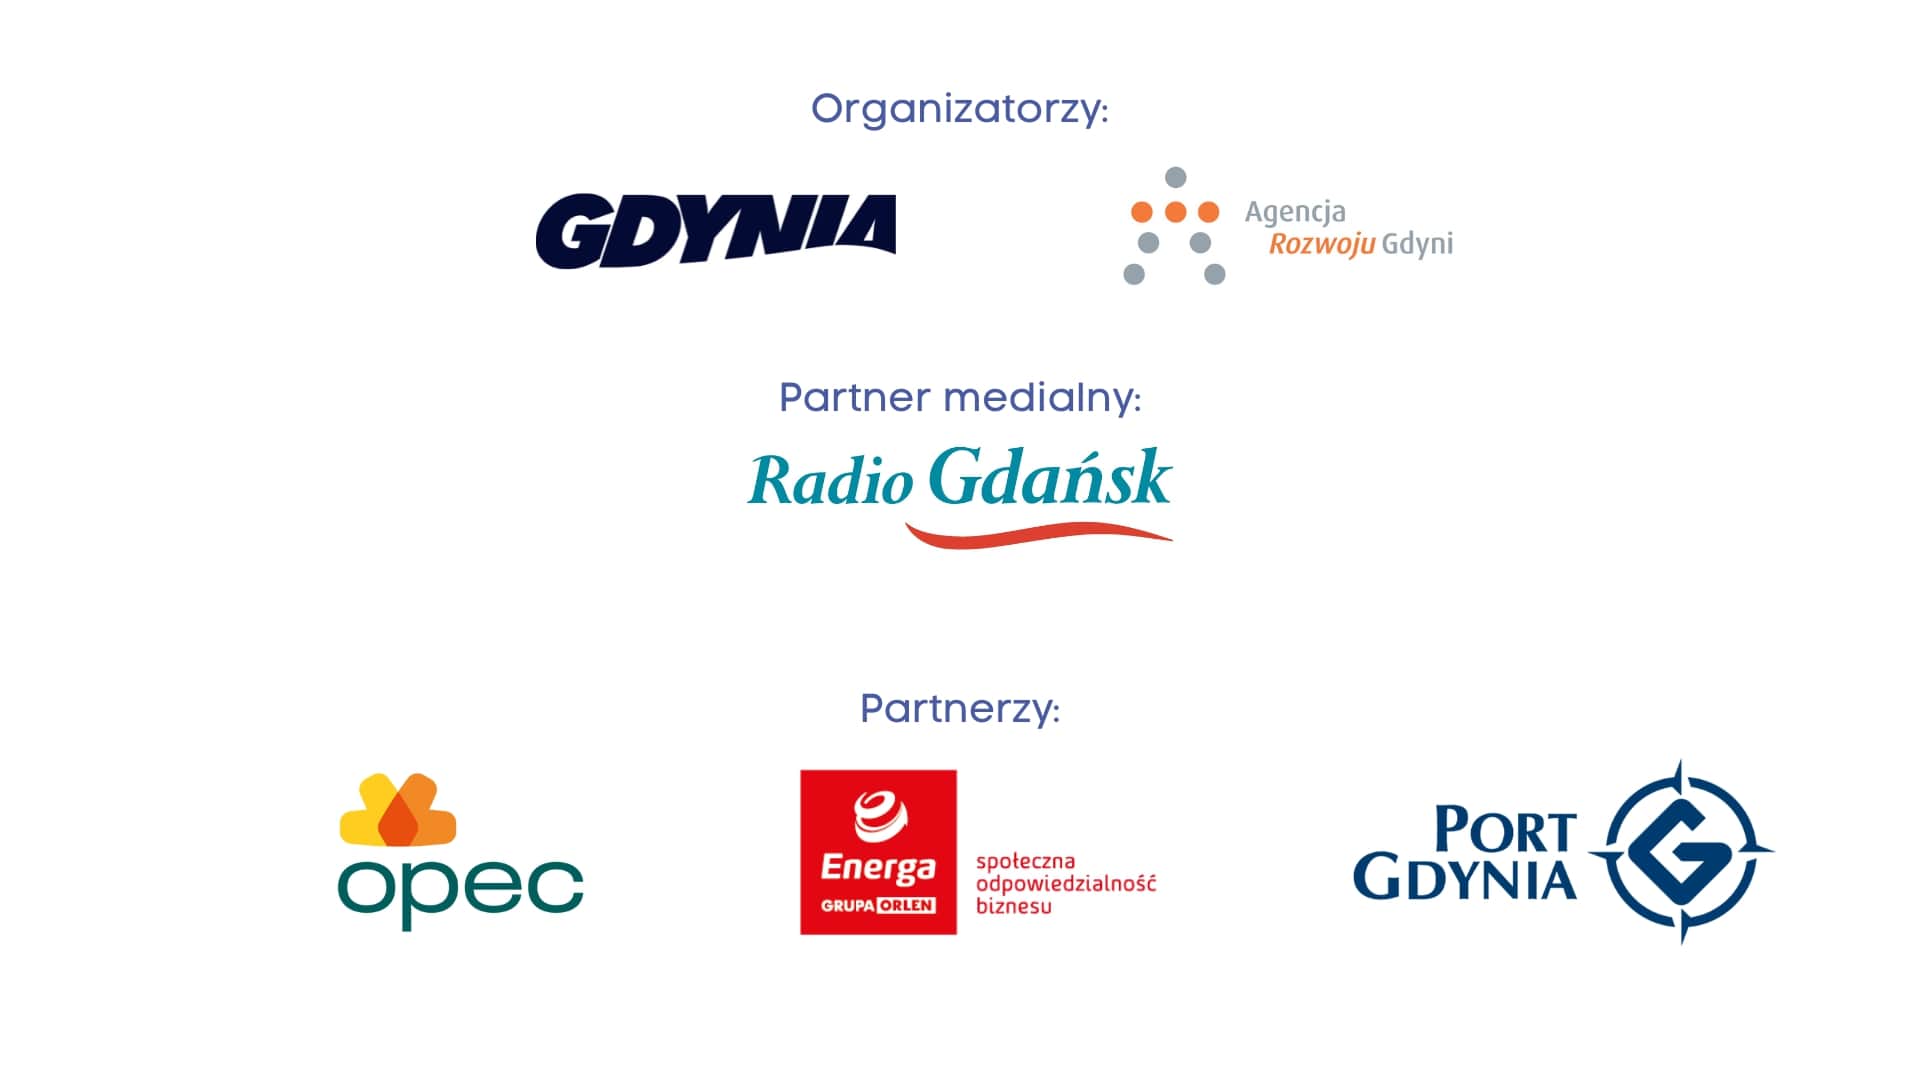 Organizatorzy: Gdynia, Agencja Rozwoju Gdyni. Partner medialny: Radio Gdańsk. Partnerzy: OPEC, ENERGA Grupa Orlen, Port Gdynia.